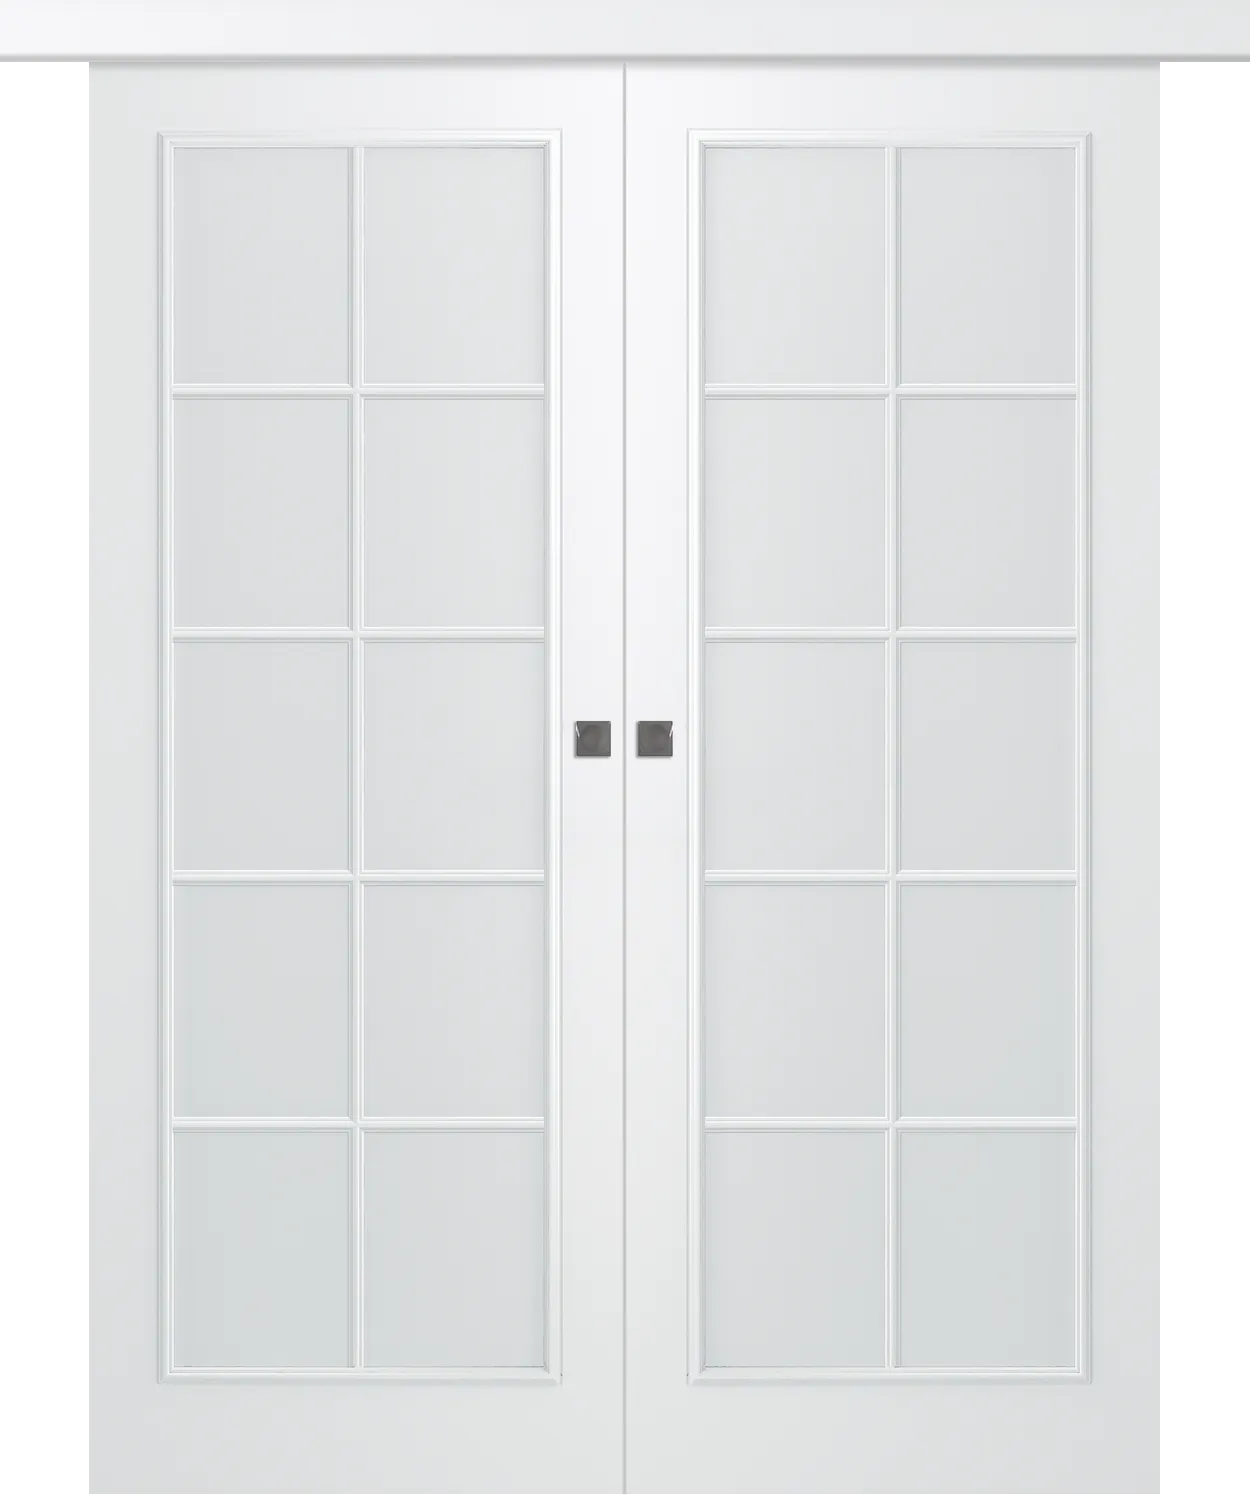 Дверное Полотно Пвдощ "Ламира 1" Эмаль Белый 2,0-0,6 Smart Core Со Стеклом Мателюкс Белый Купе двойное